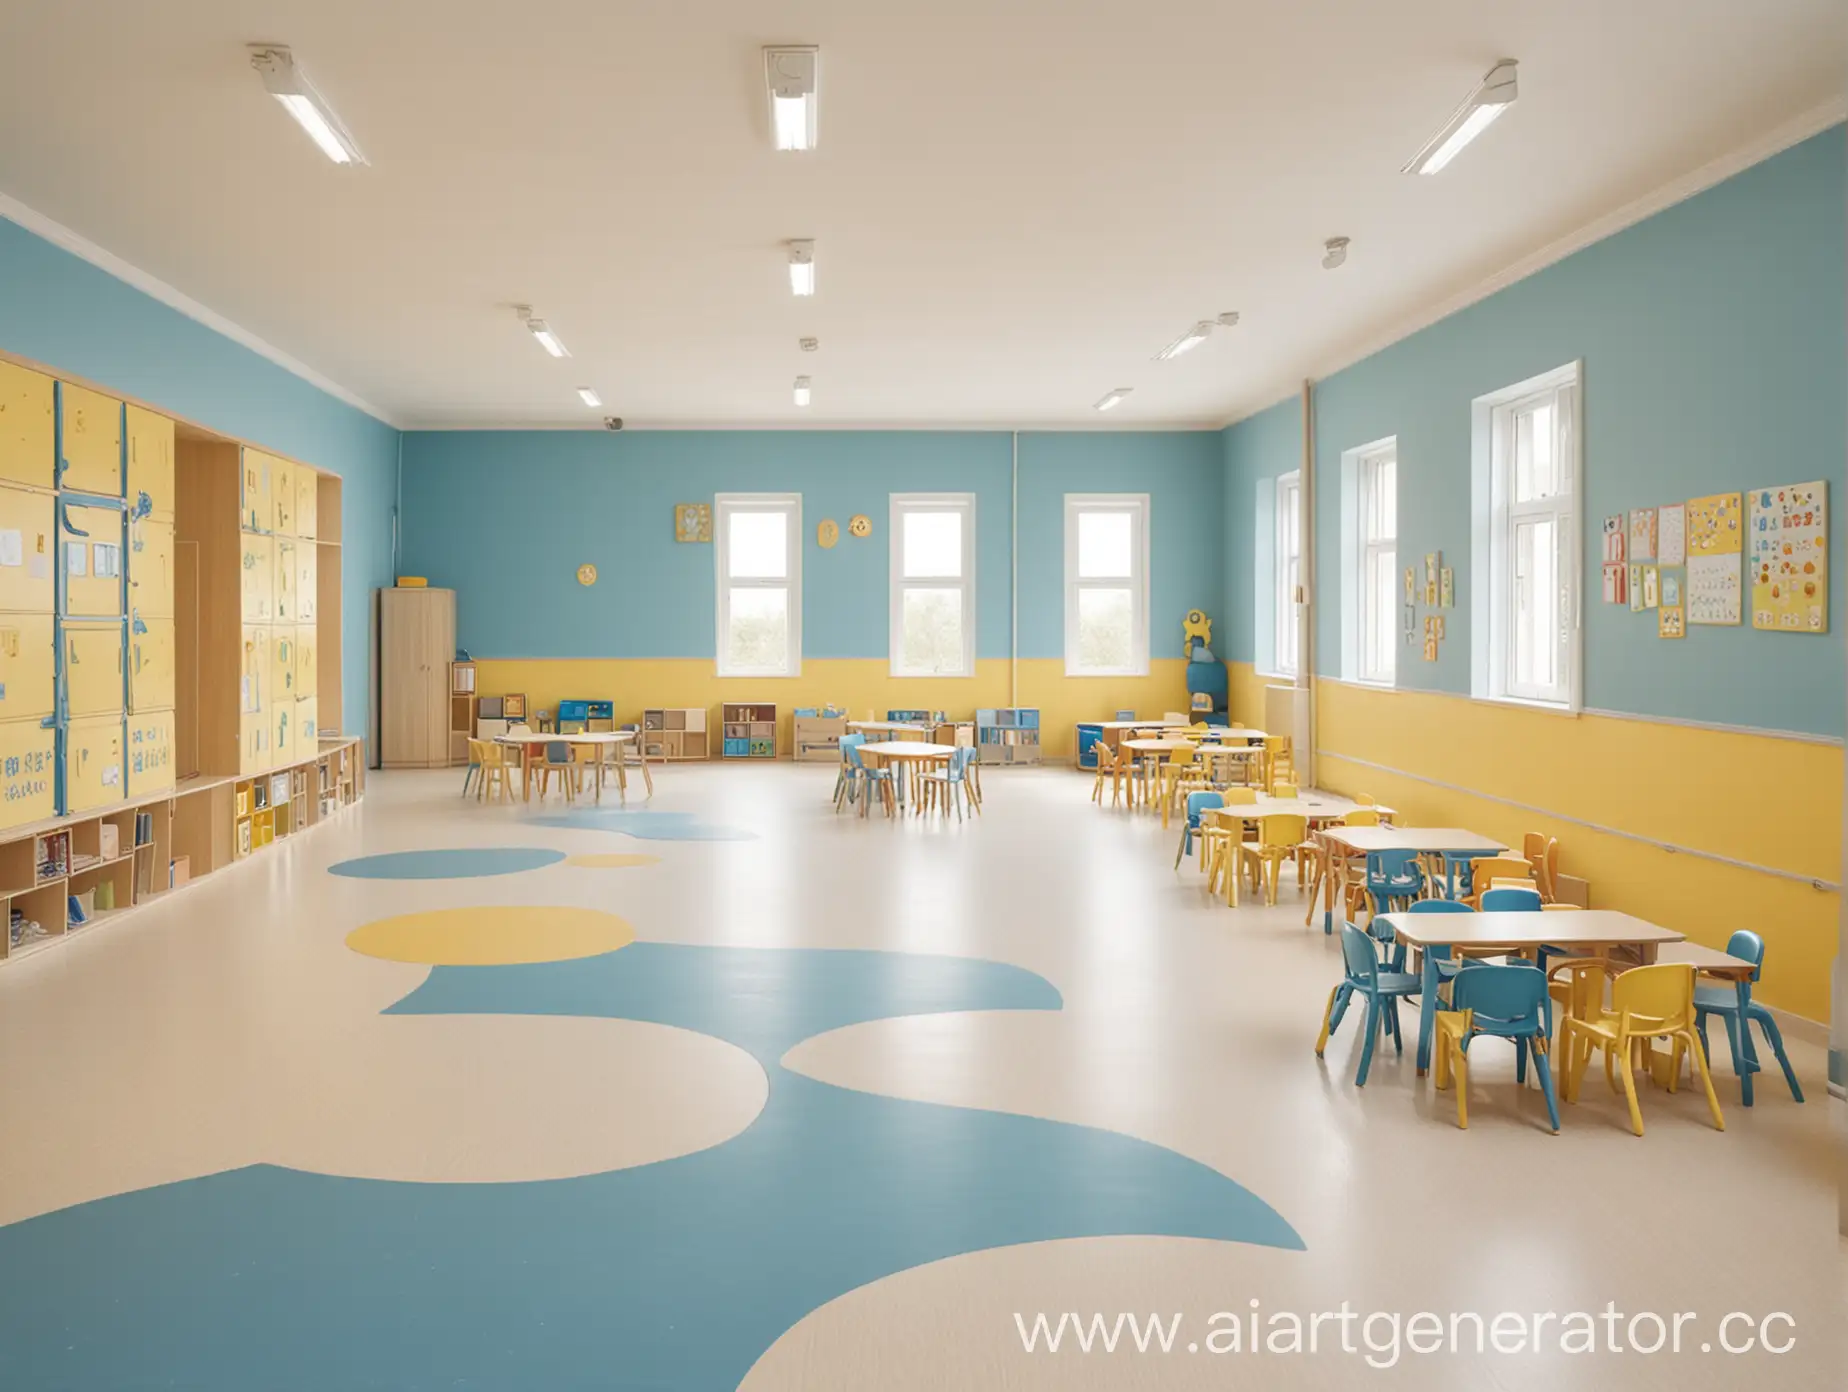 Spacious-Kindergarten-Interior-in-Beige-Blue-and-Yellow-Tones